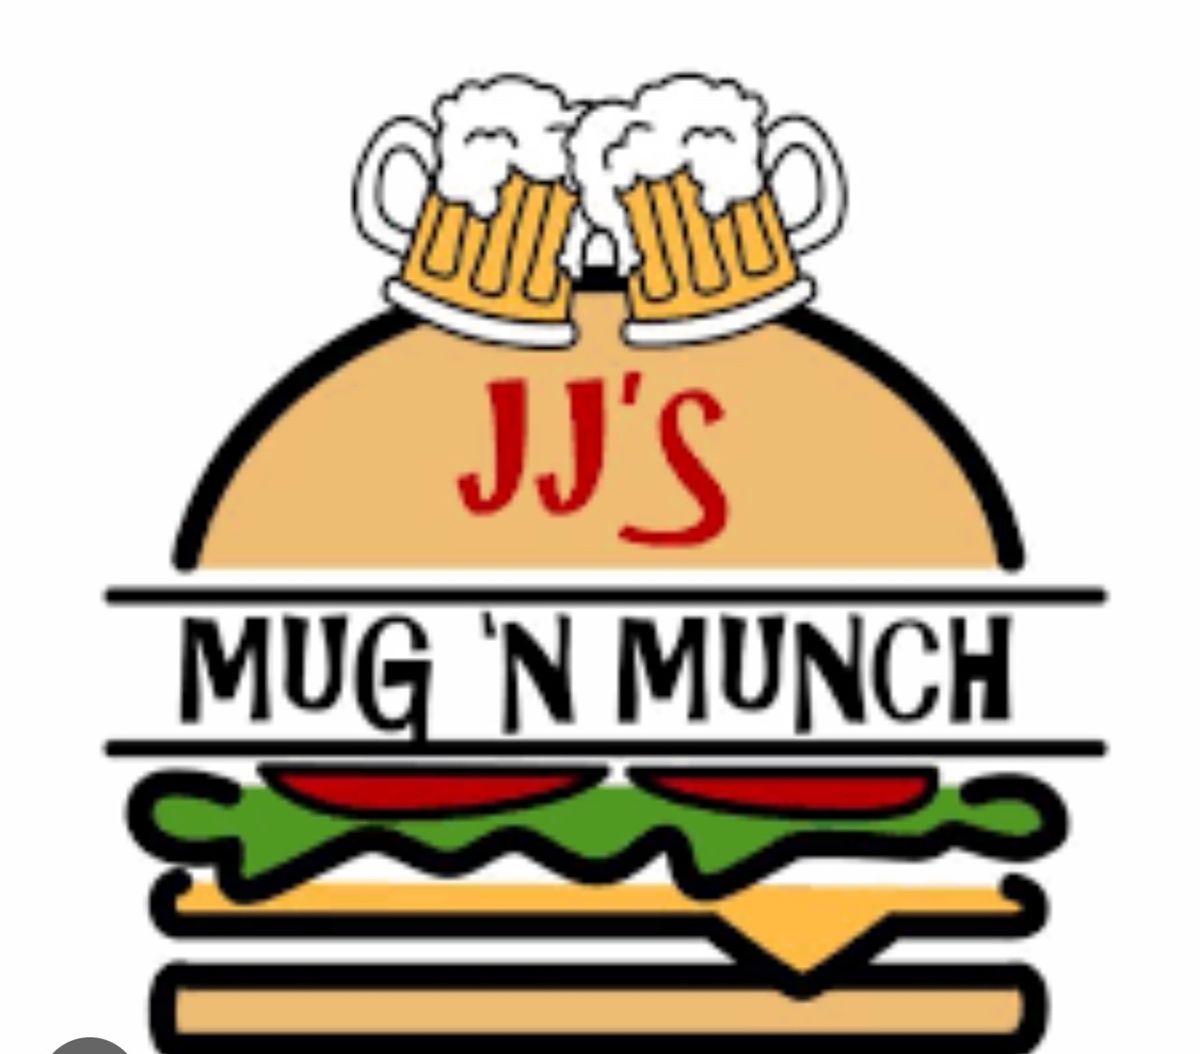 Sunday funday at JJs Mug and Munch!